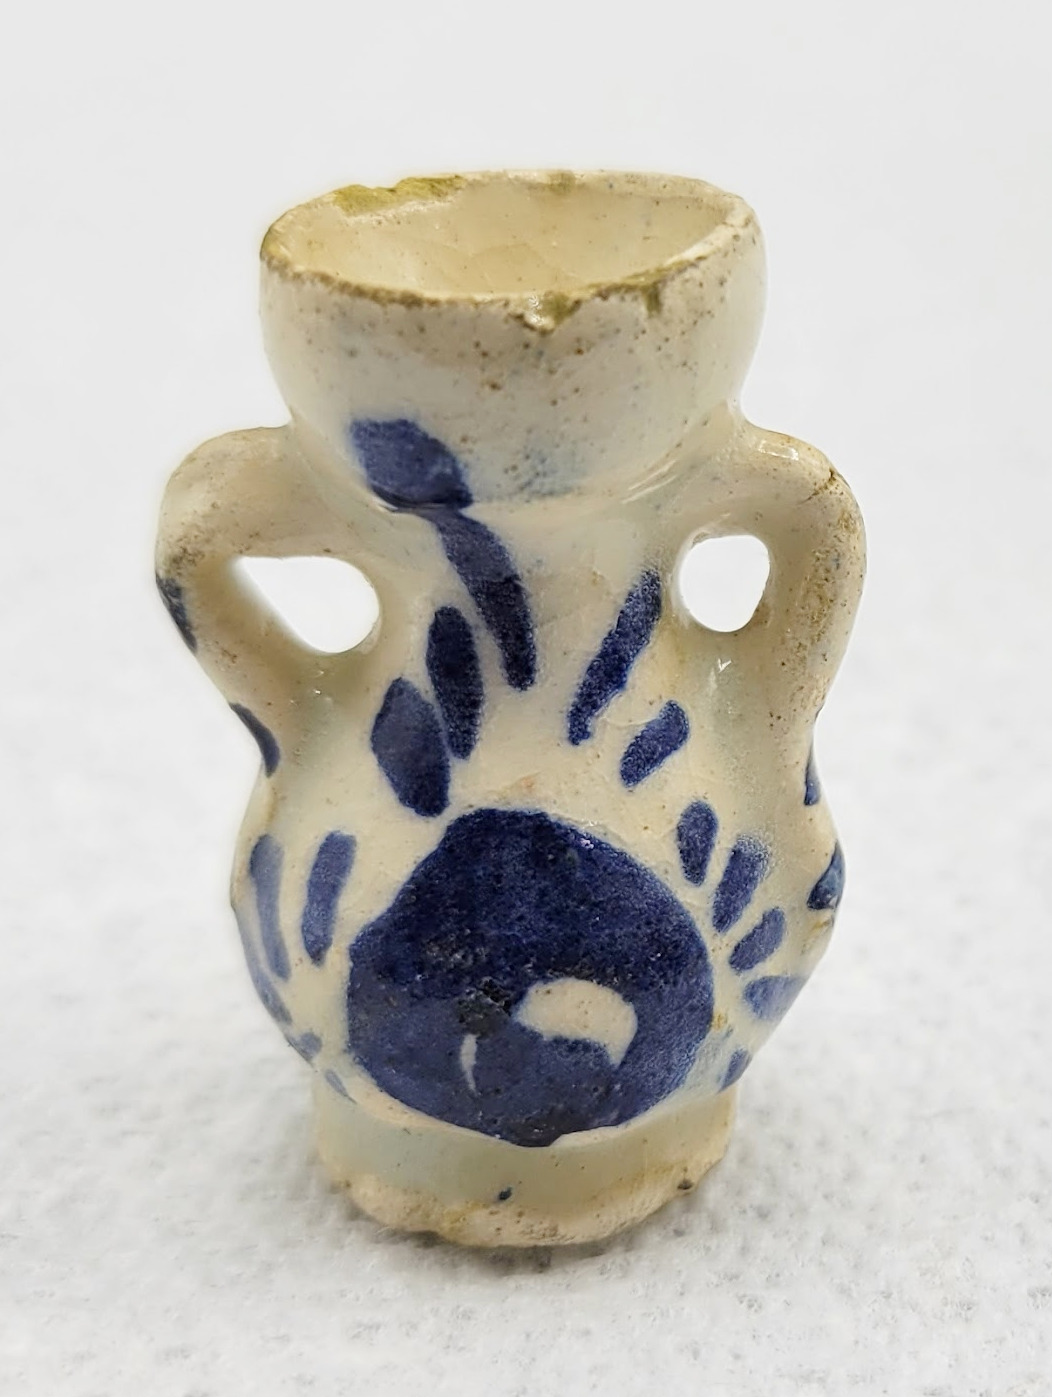 Vintage Miniature Pottery Clay Blue and White Miniature Vase Urn Jug Figurine